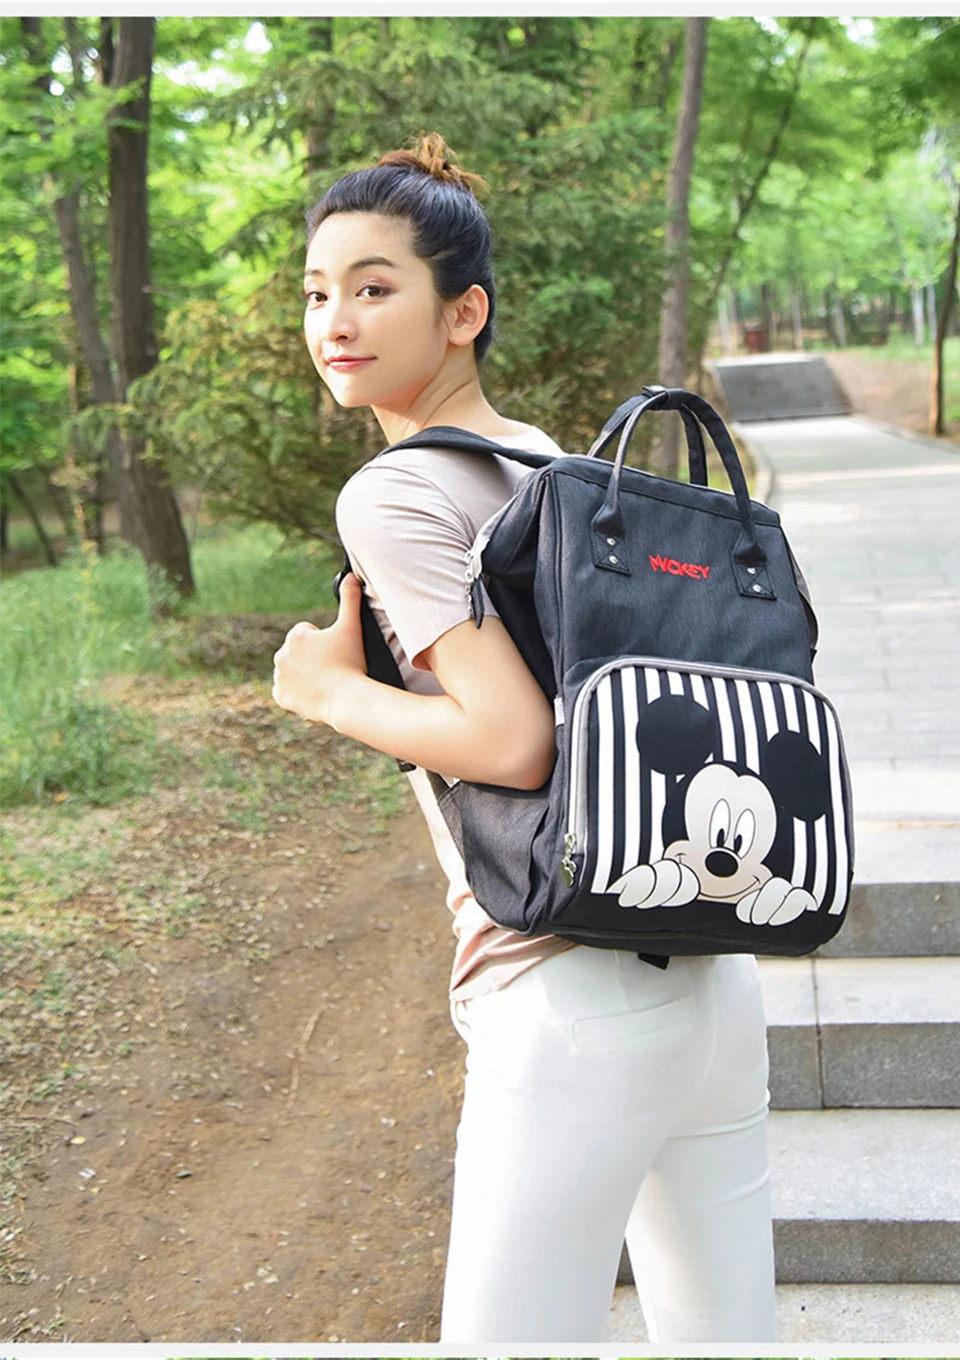 Сумка для подгузников с изображением Диснея Микки и Минни, USB, водонепроницаемые сумки для мам/подгузников, застежка, сумка для коляски, вместительные рюкзаки Mochila